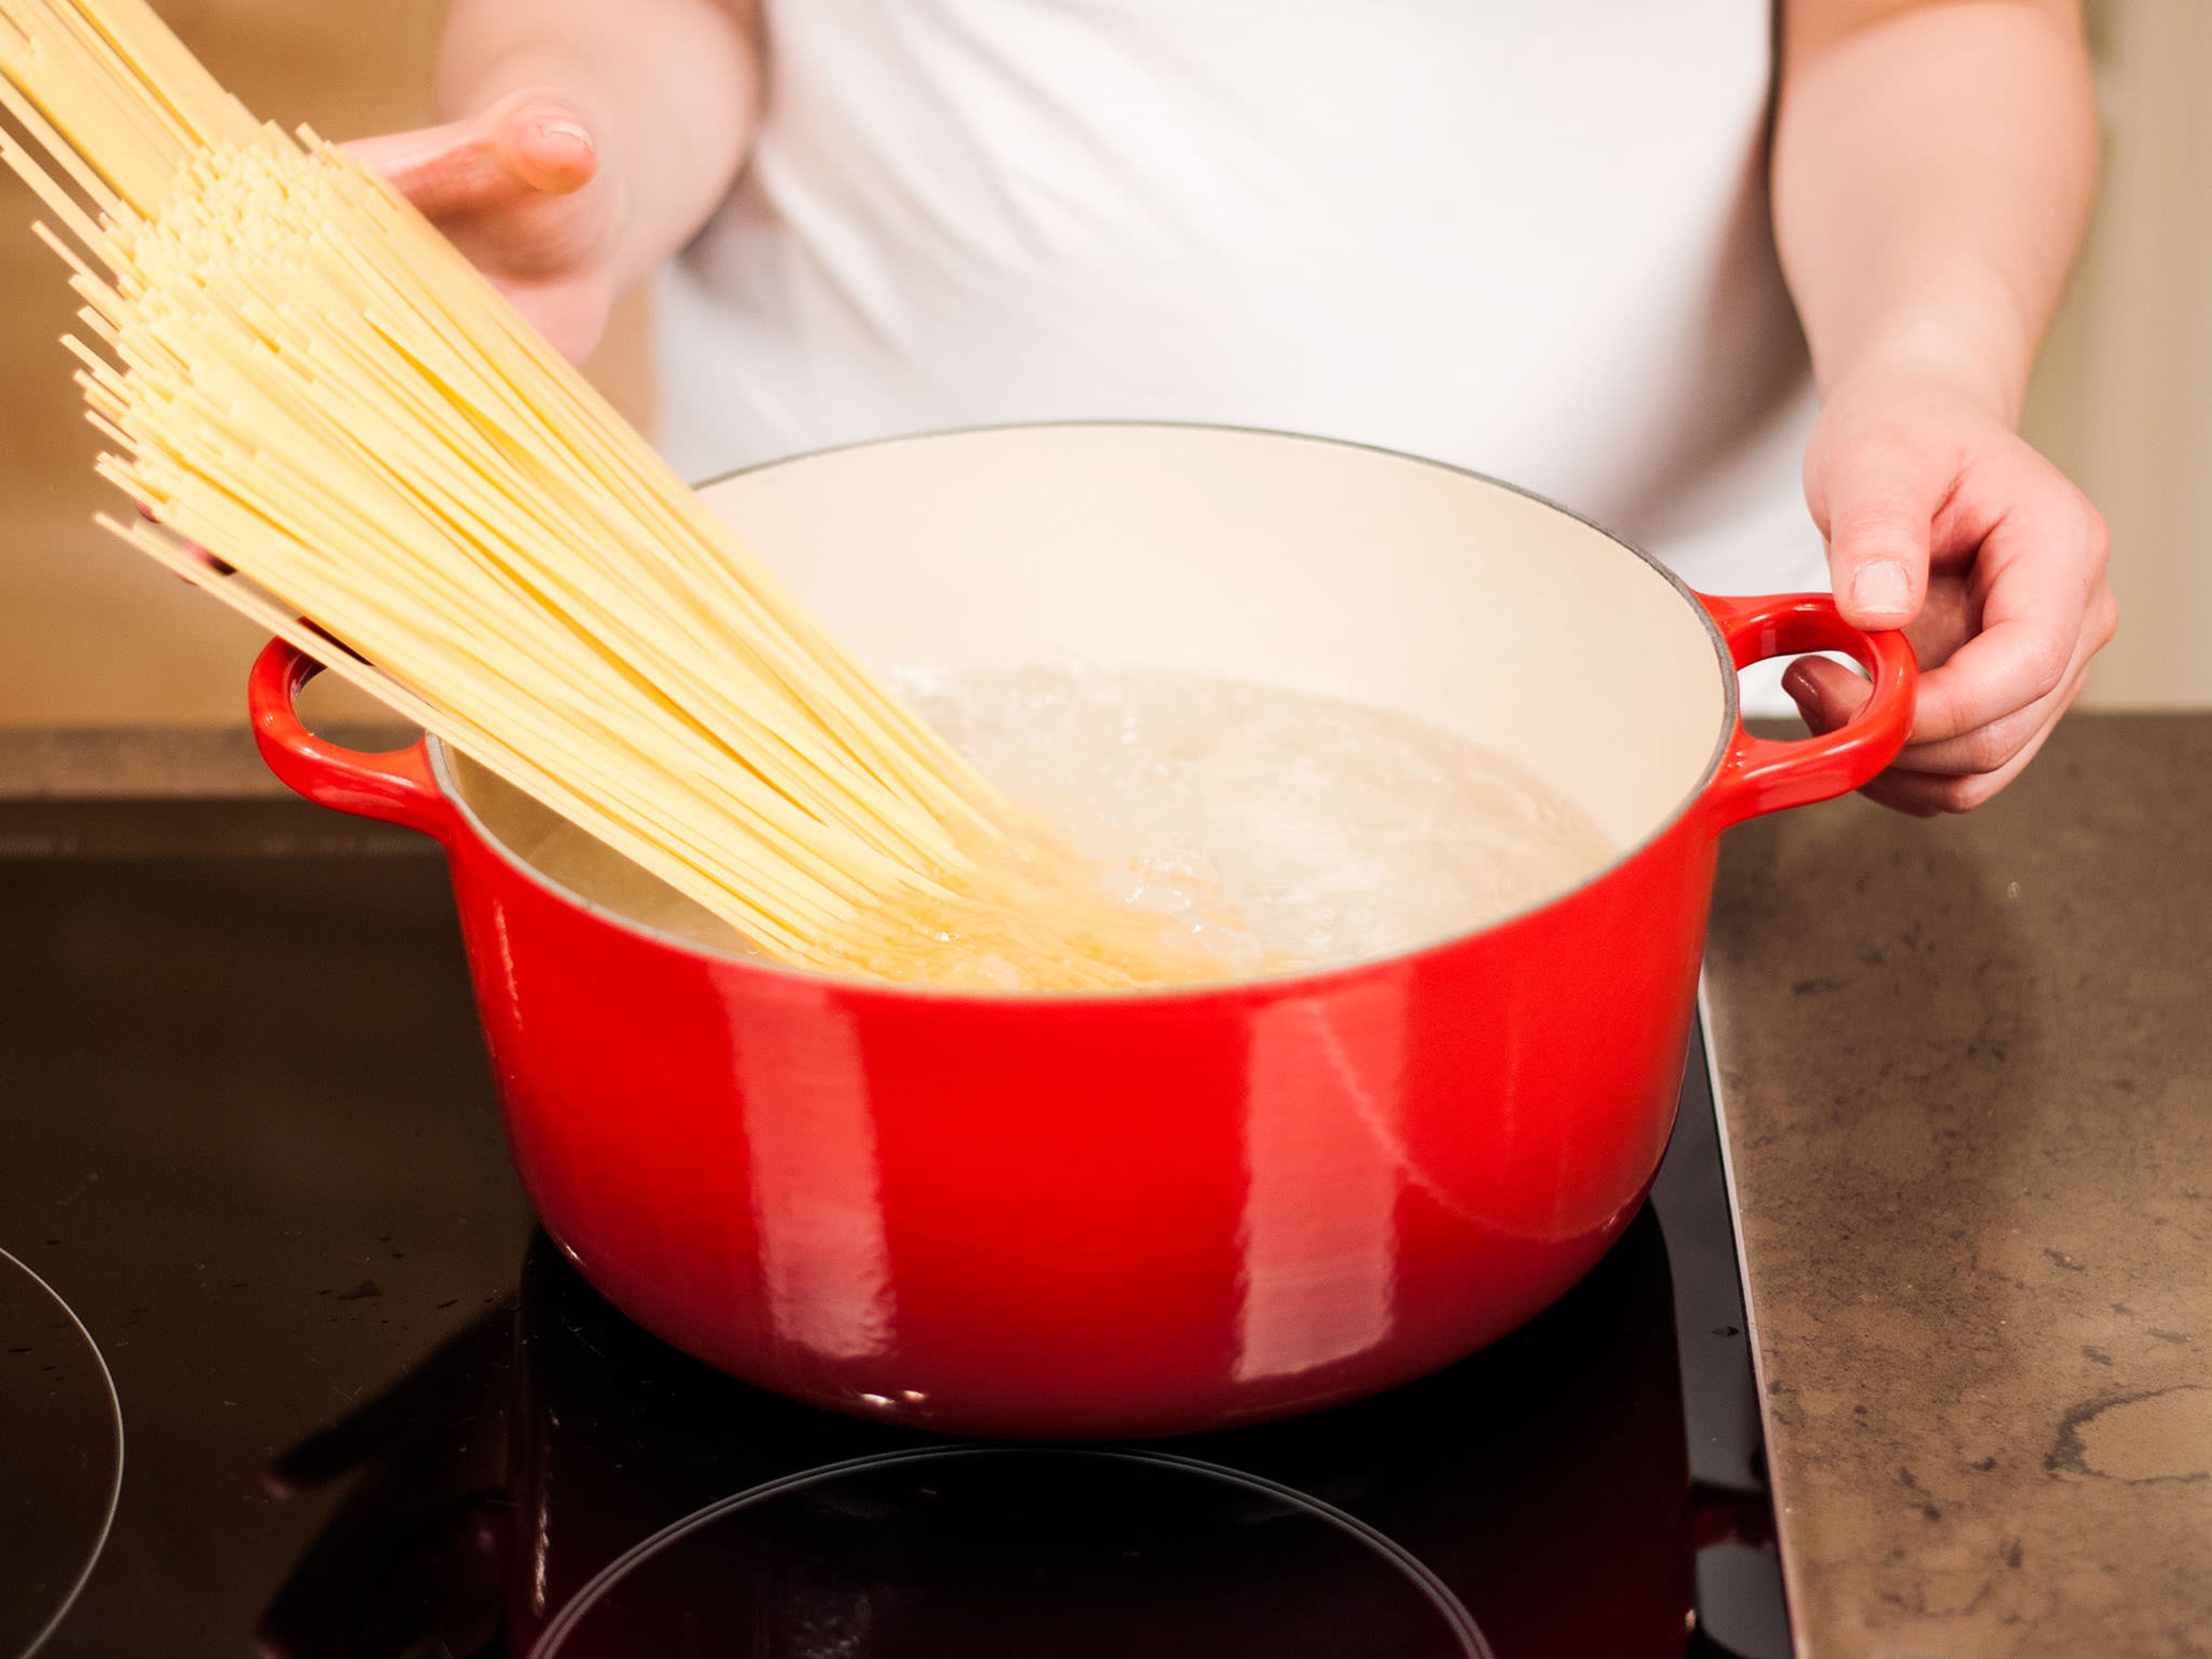 In der Zwischenzeit Spaghetti in reichlich siedendem Salzwasser nach Packungsanweisung ca. 10 – 12 Min. al dente kochen. Anschließend abgießen, mit Soße anrichten und mit geriebenem Parmesan servieren.